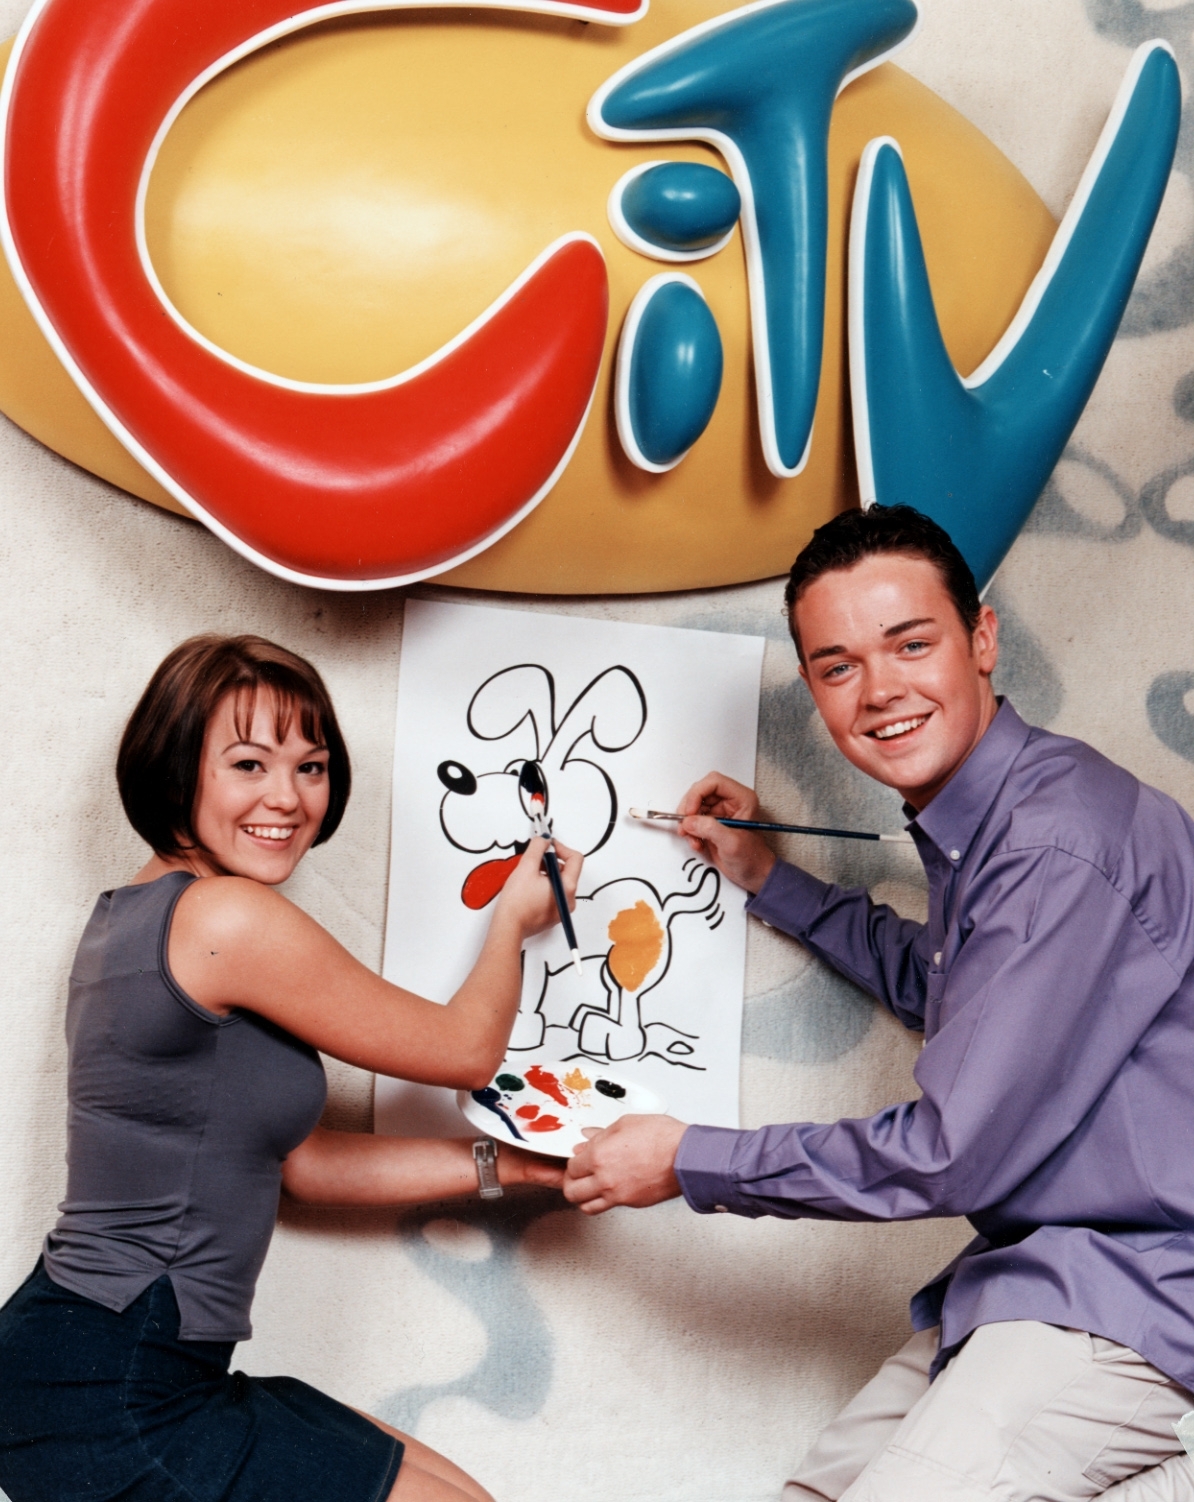 Danielle leitete CITV zwischen 1998 und 2002 zusammen mit Stephen Mulhern